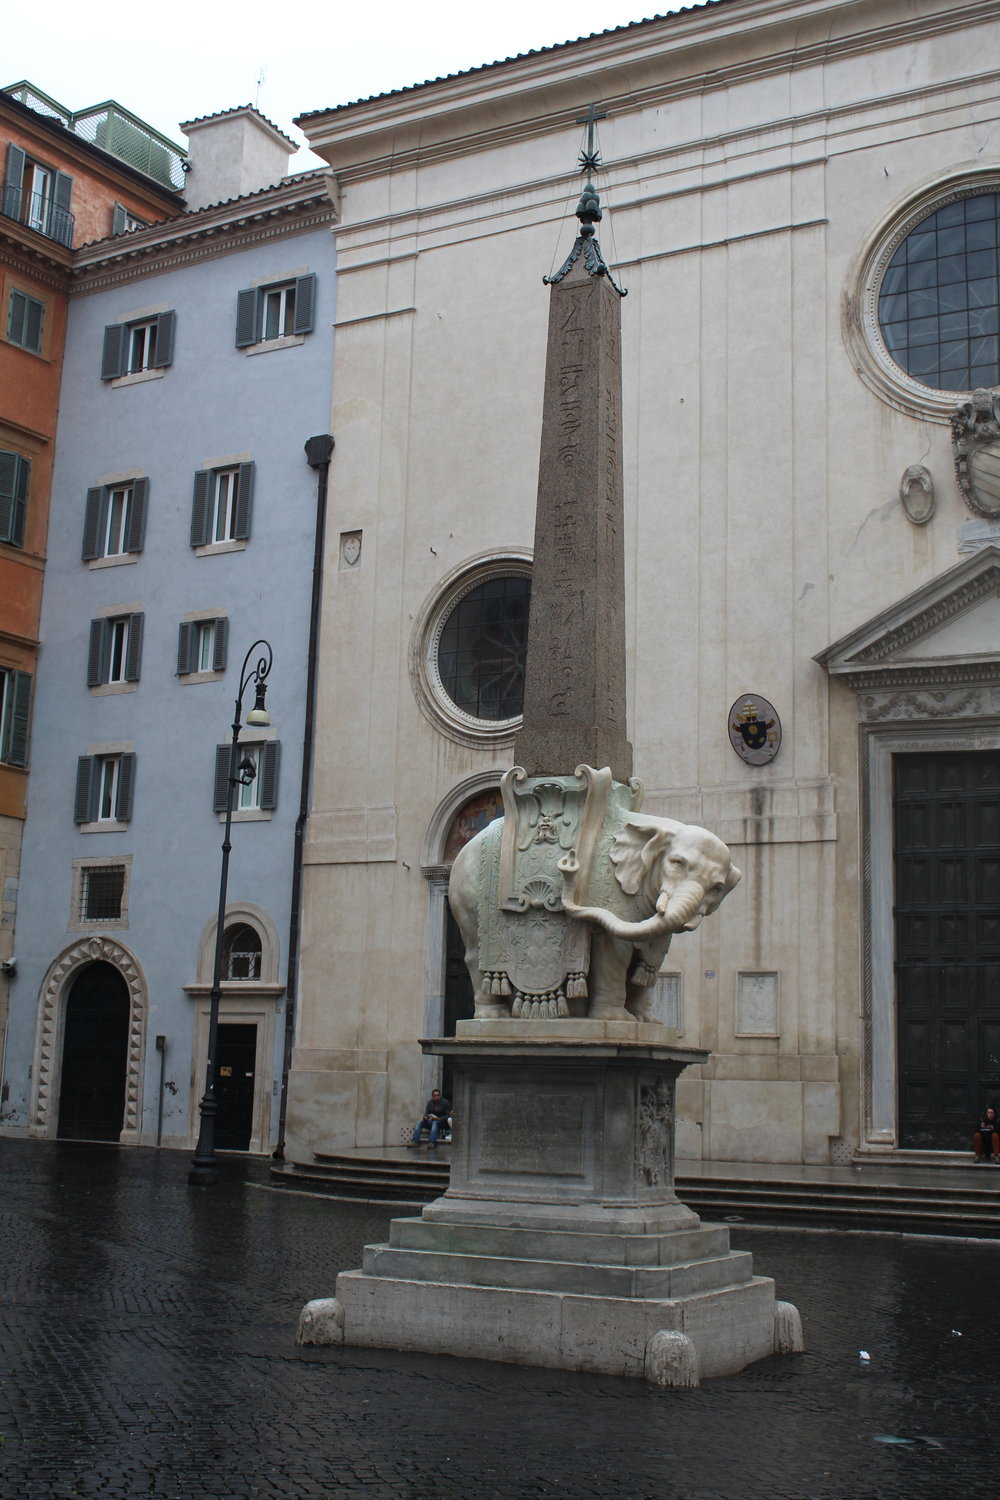 Elephant and Obelisk in Piazza della Minerva